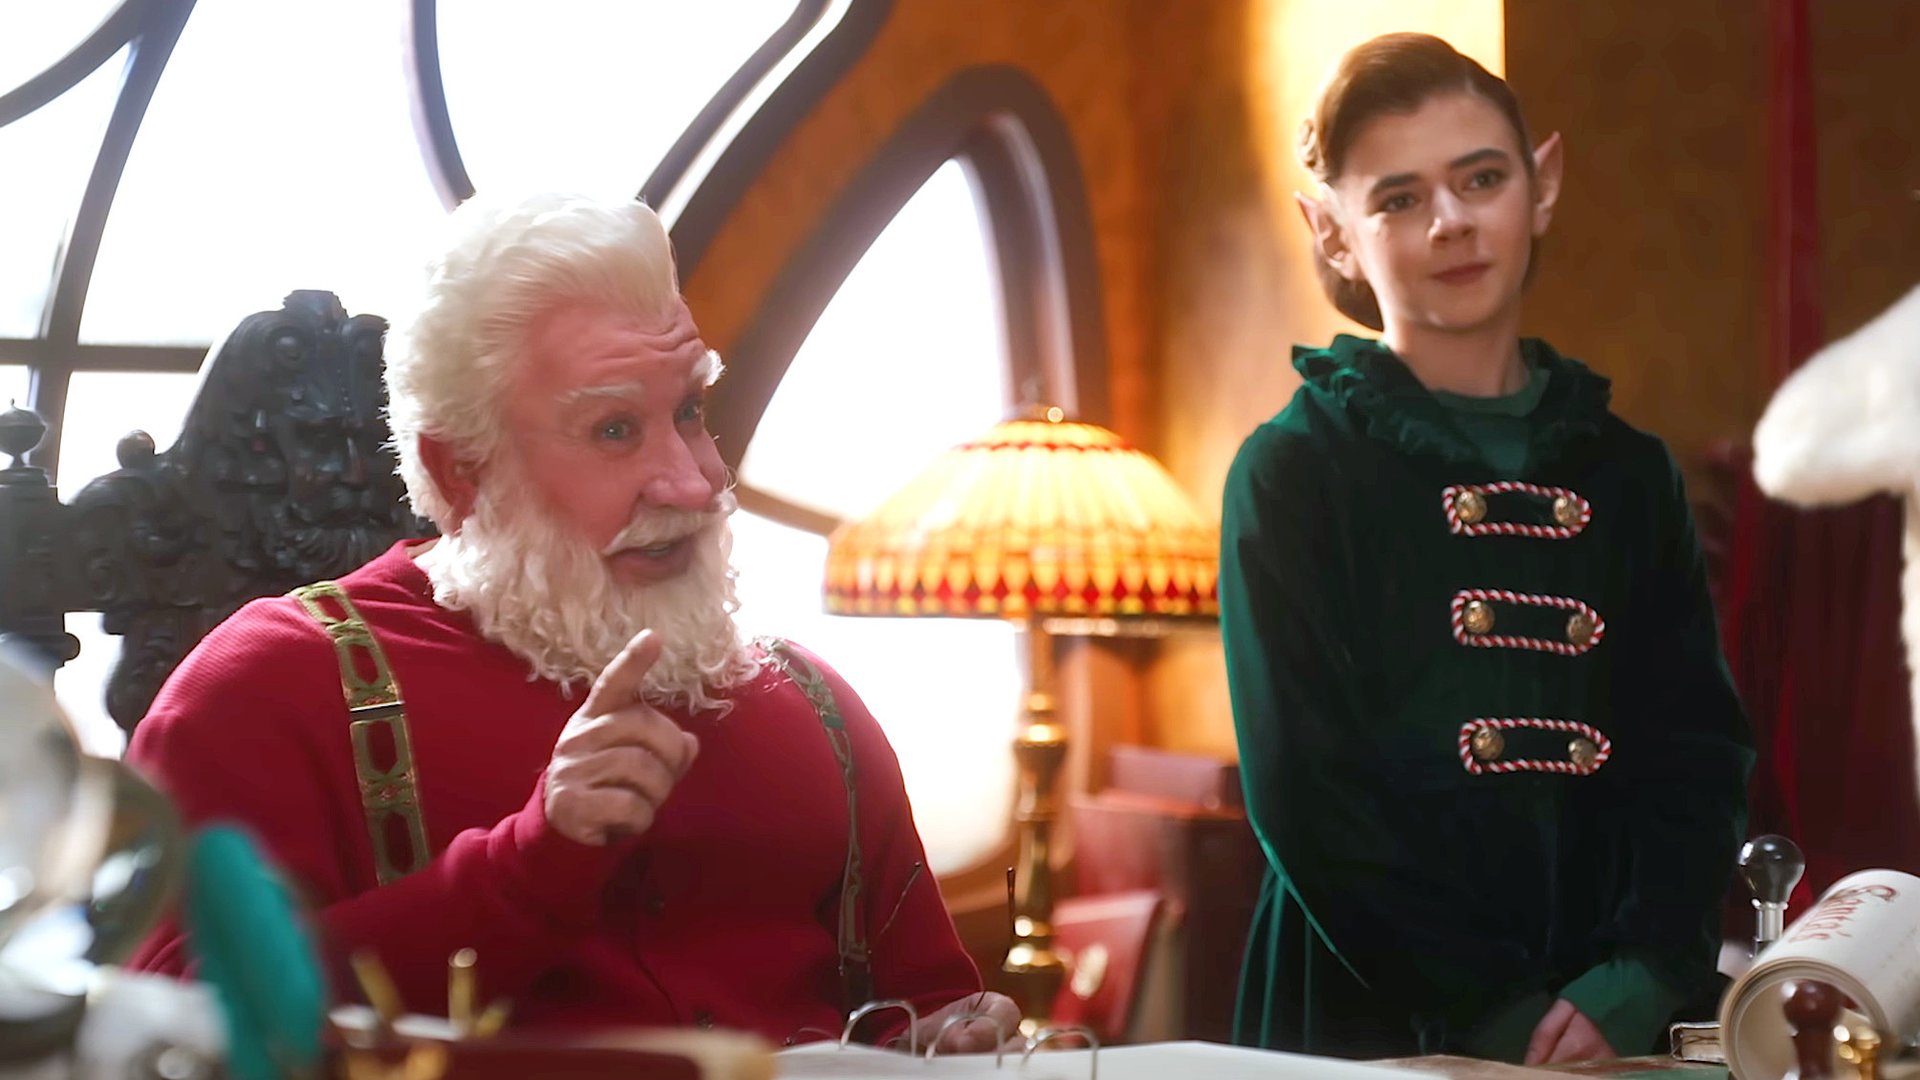 #Erster Disney-Trailer zur „Santa Clause“-Fortsetzung mit Tim Allen entfesselt festliche Stimmung